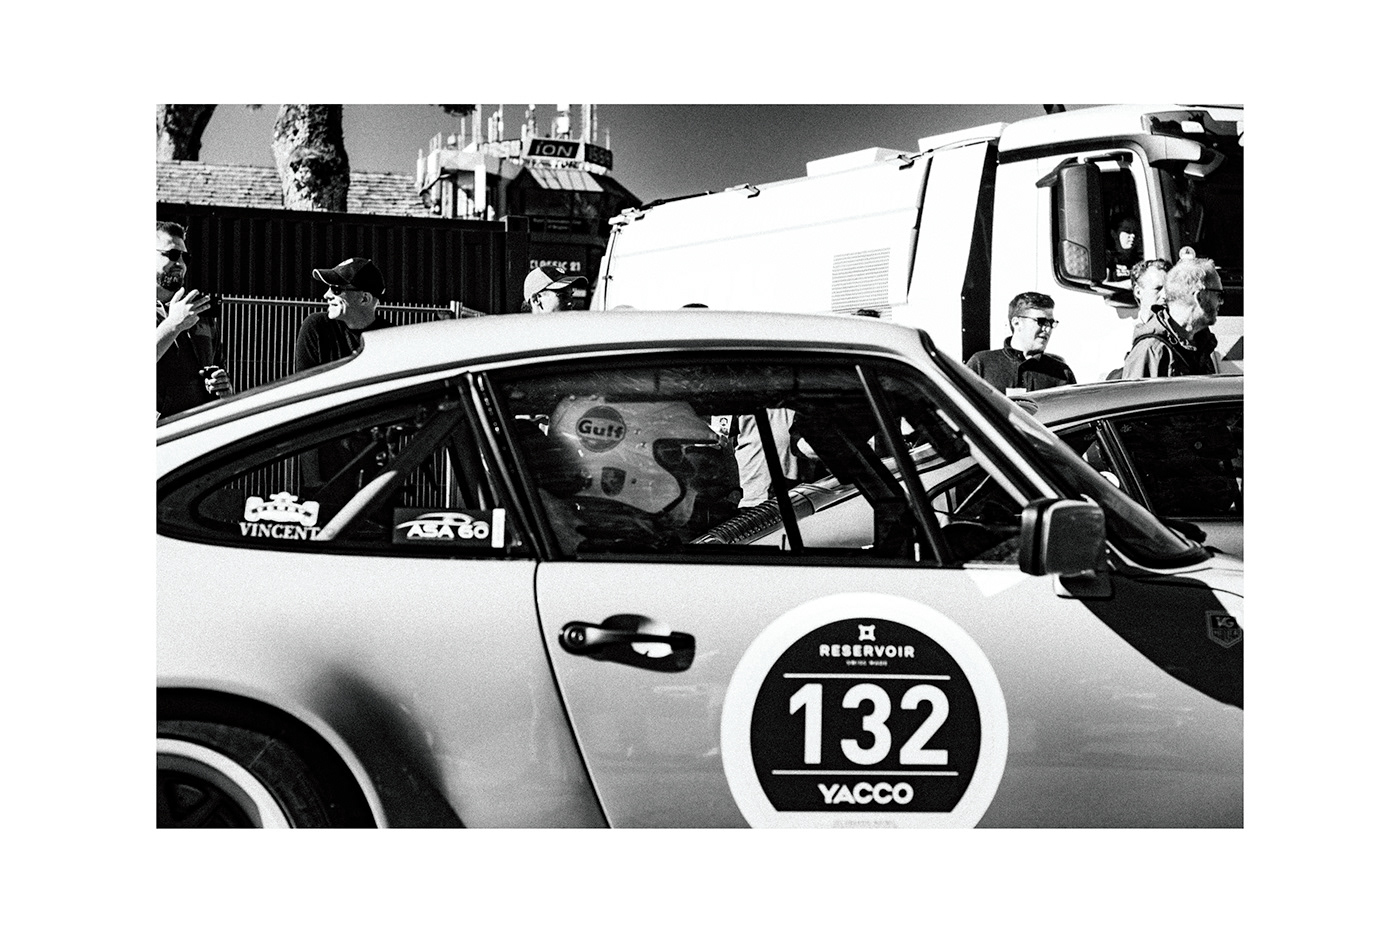 Porsche 911 racing